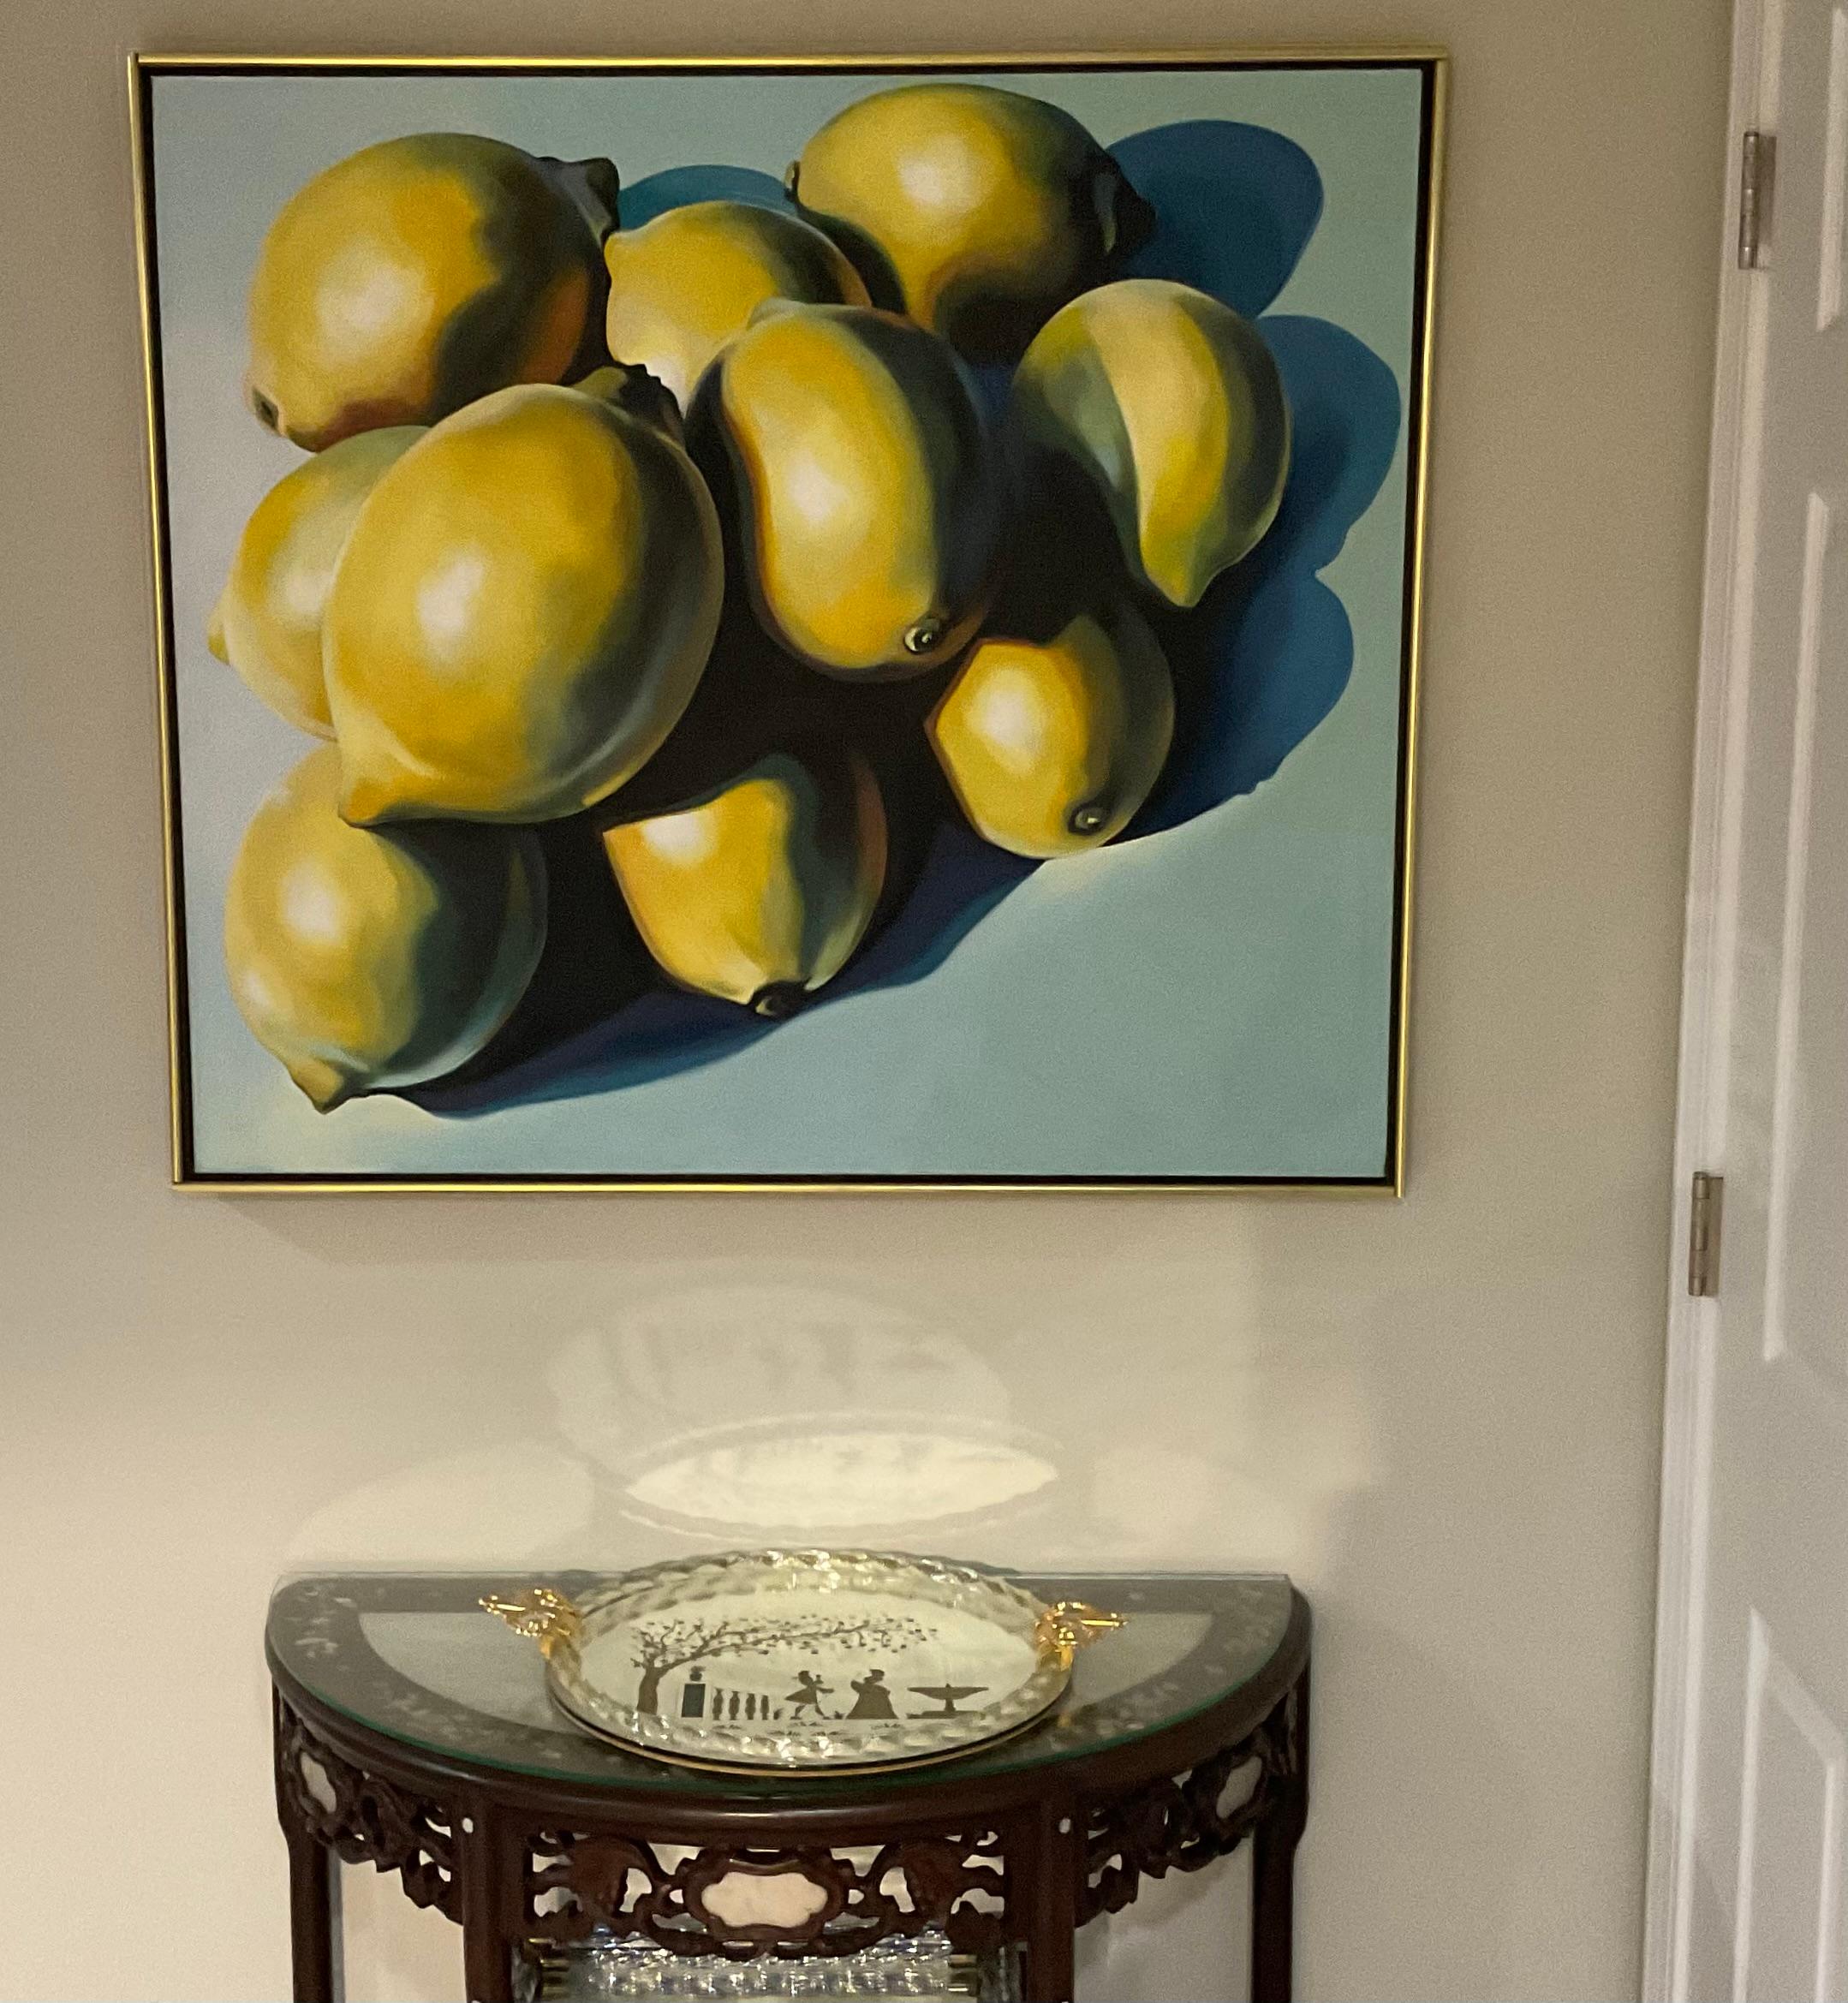 Artista: Lowell Blair Nesbitt, estadounidense (1933 - 1993) Título: Diez limones sobre azul Año: 1978 Técnica: Óleo sobre lienzo, firmado y fechado en el reverso Con etiquetas originales 